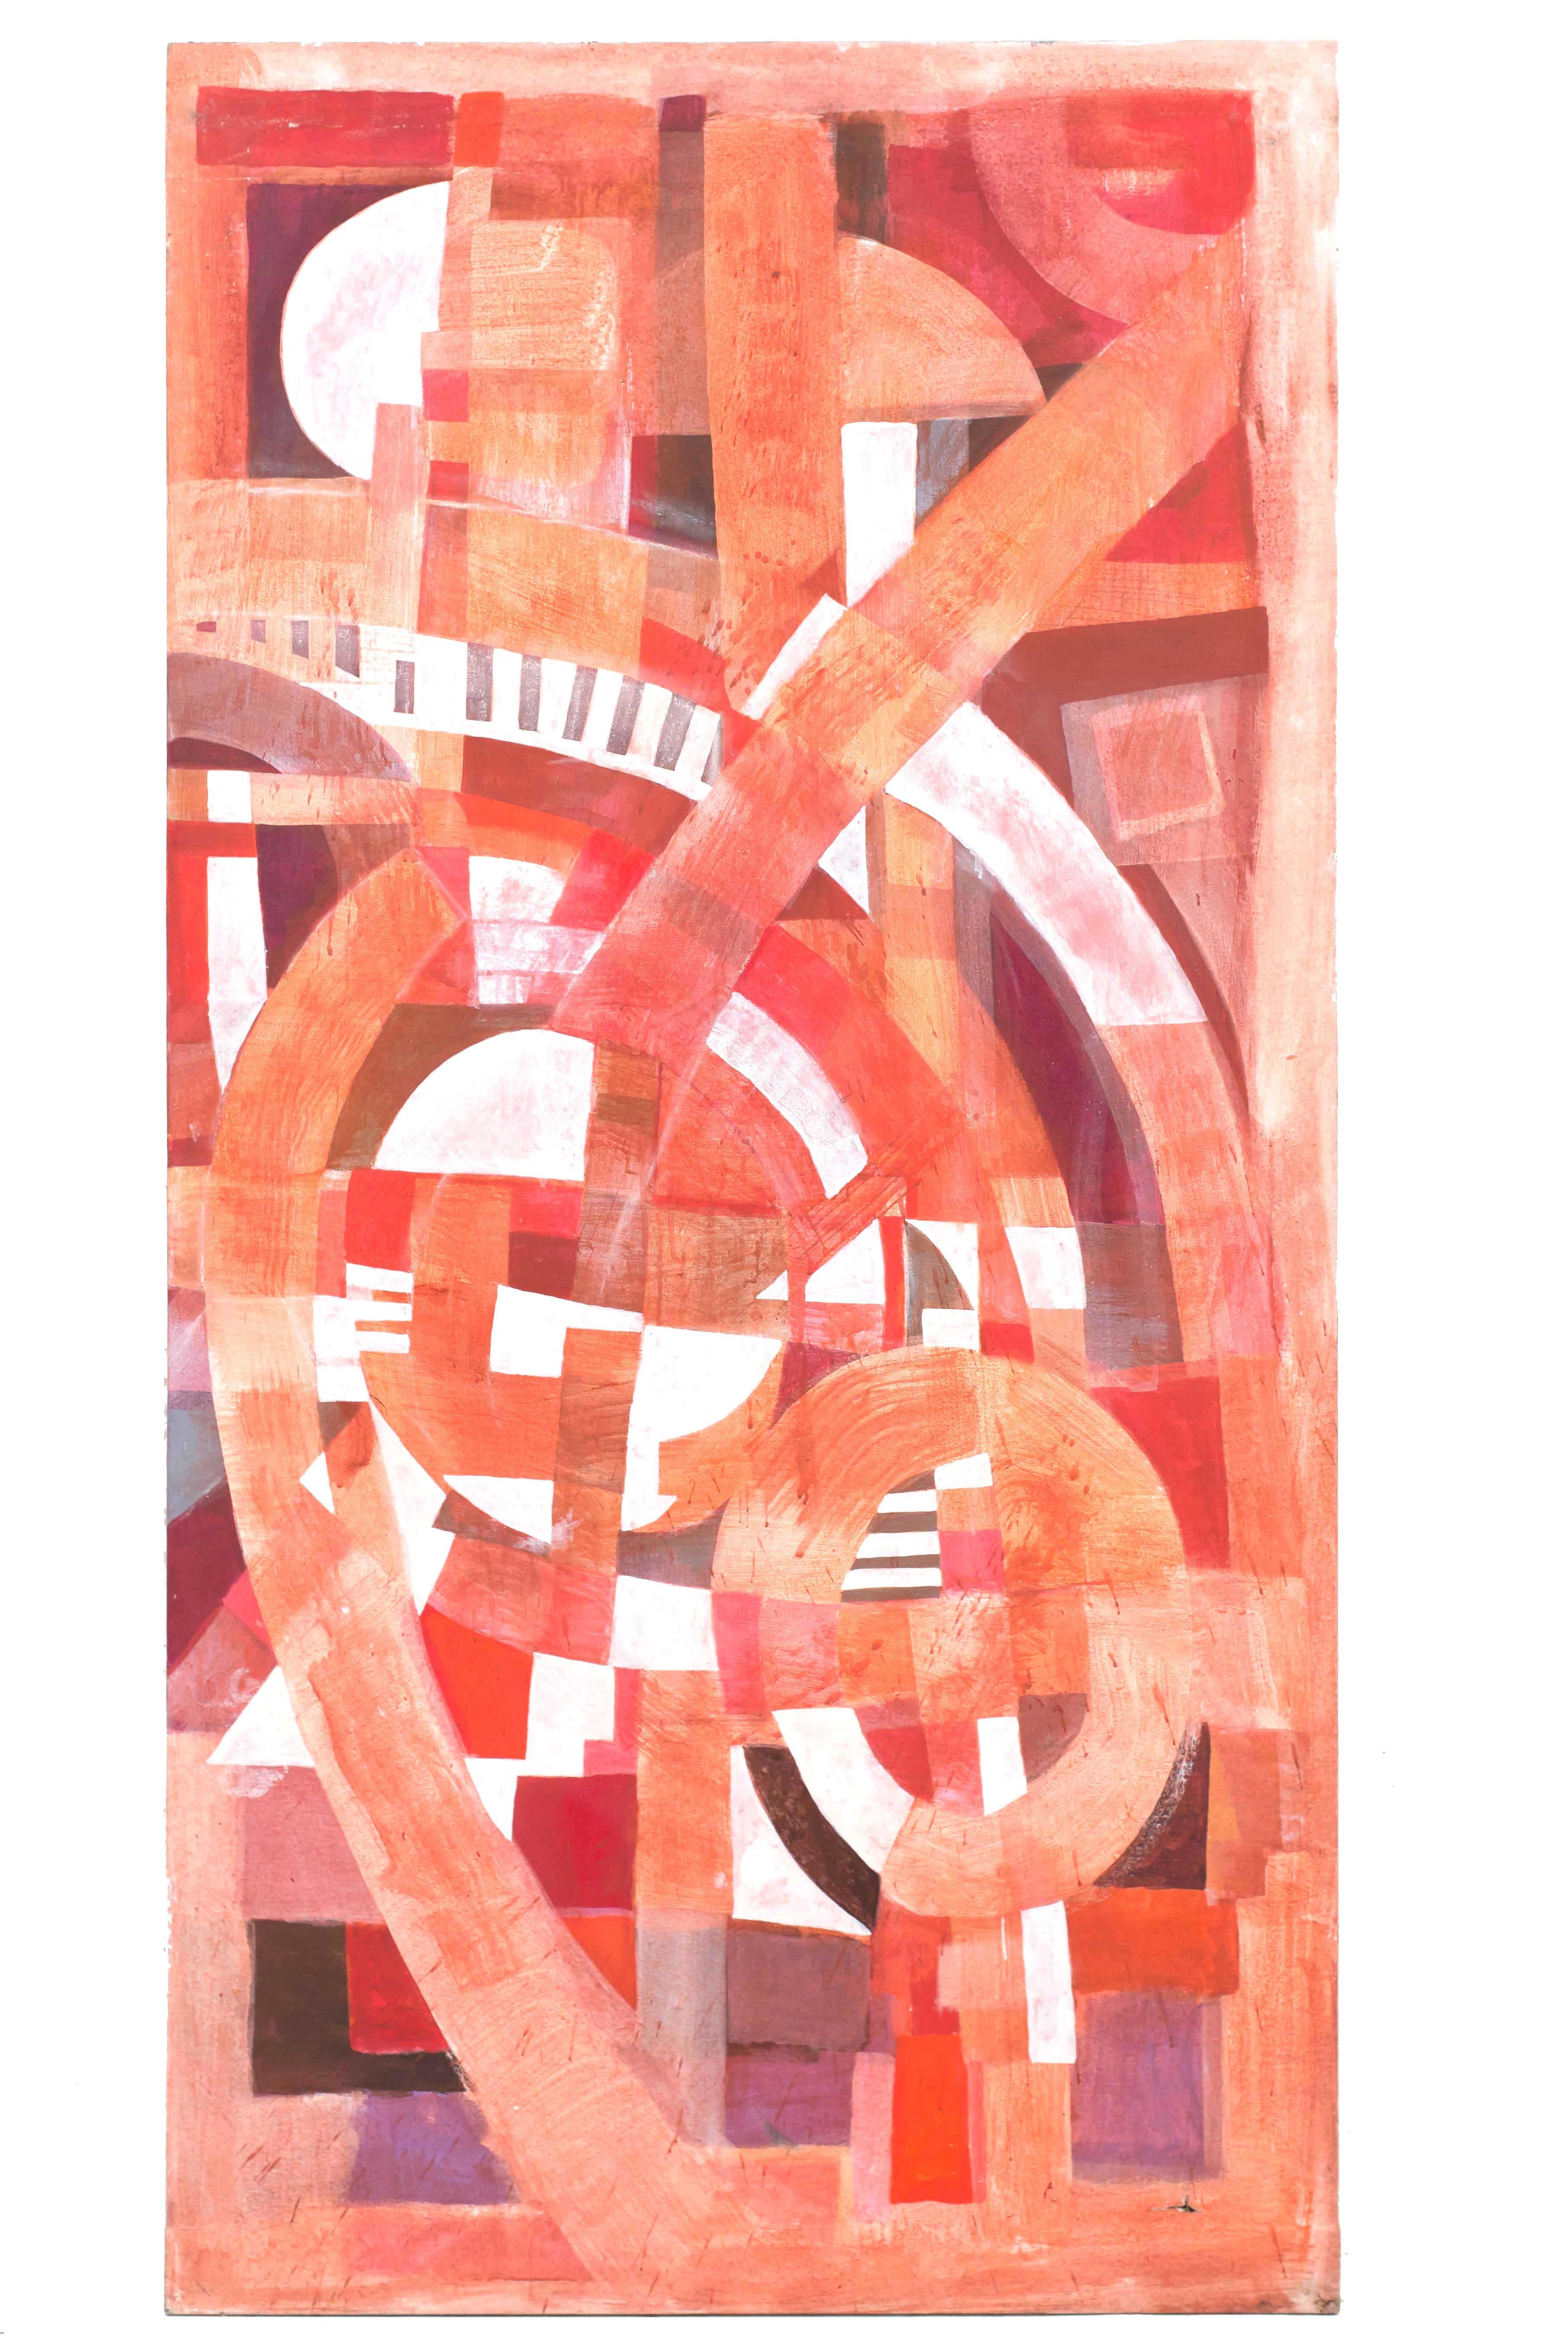 Set von 3 Zeitgenössische abstrakte Gemälde (Triptychon) mit Gouache auf rechteckige Leinwand in den Farben rosa, rot und weiß. (TOM JOHN, 2010)
